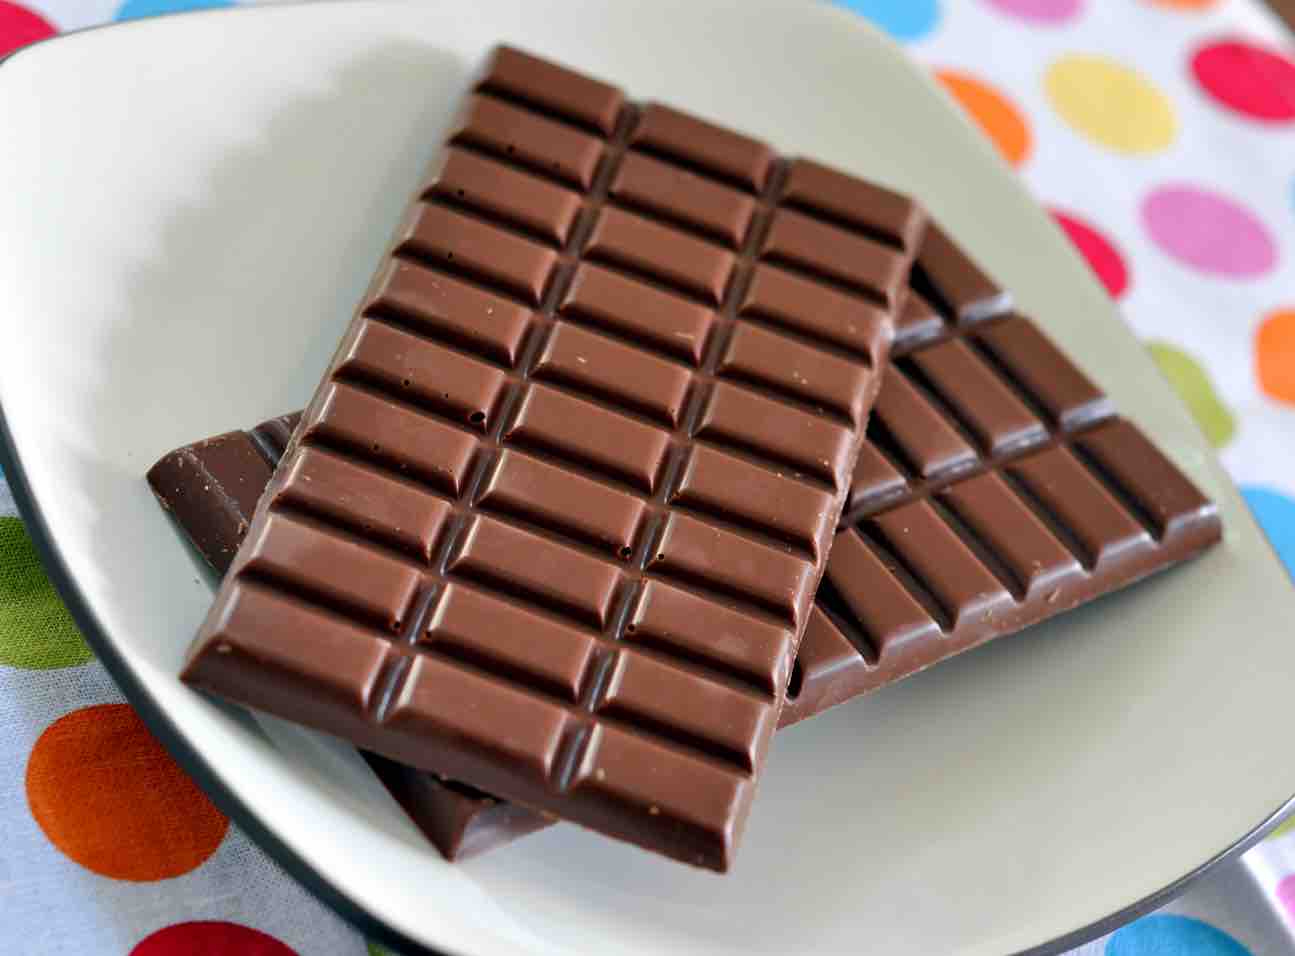 Ανακαλείται γνωστή σοκολάτα - Δείτε τι βρέθηκε